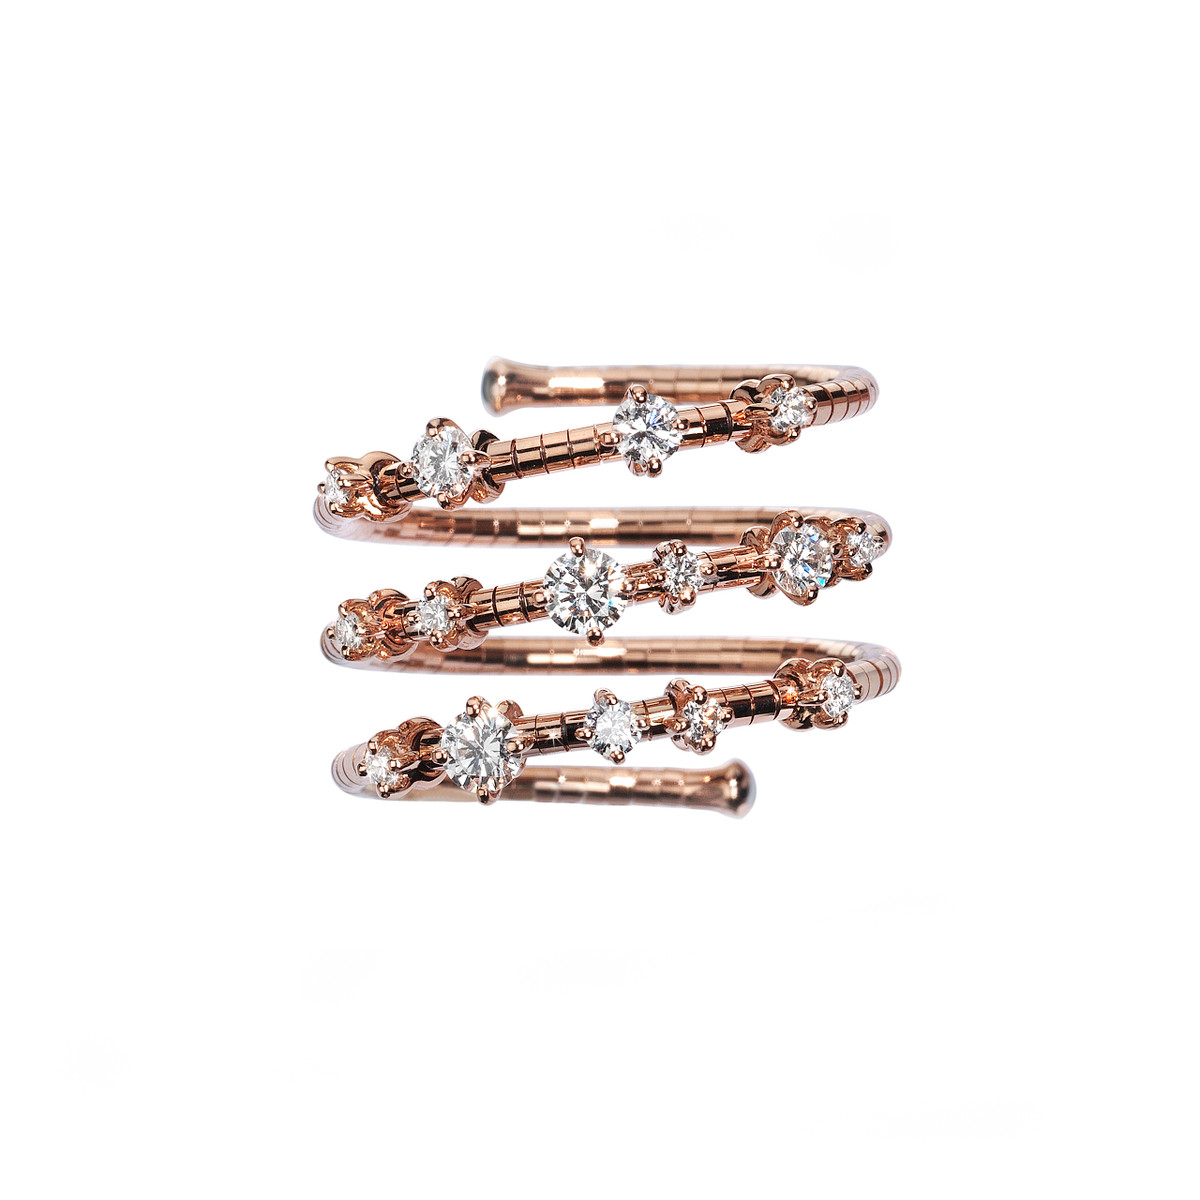 Mattia Cielo 18K Rose Gold 3 Row Spiral Diamond Ring-53162